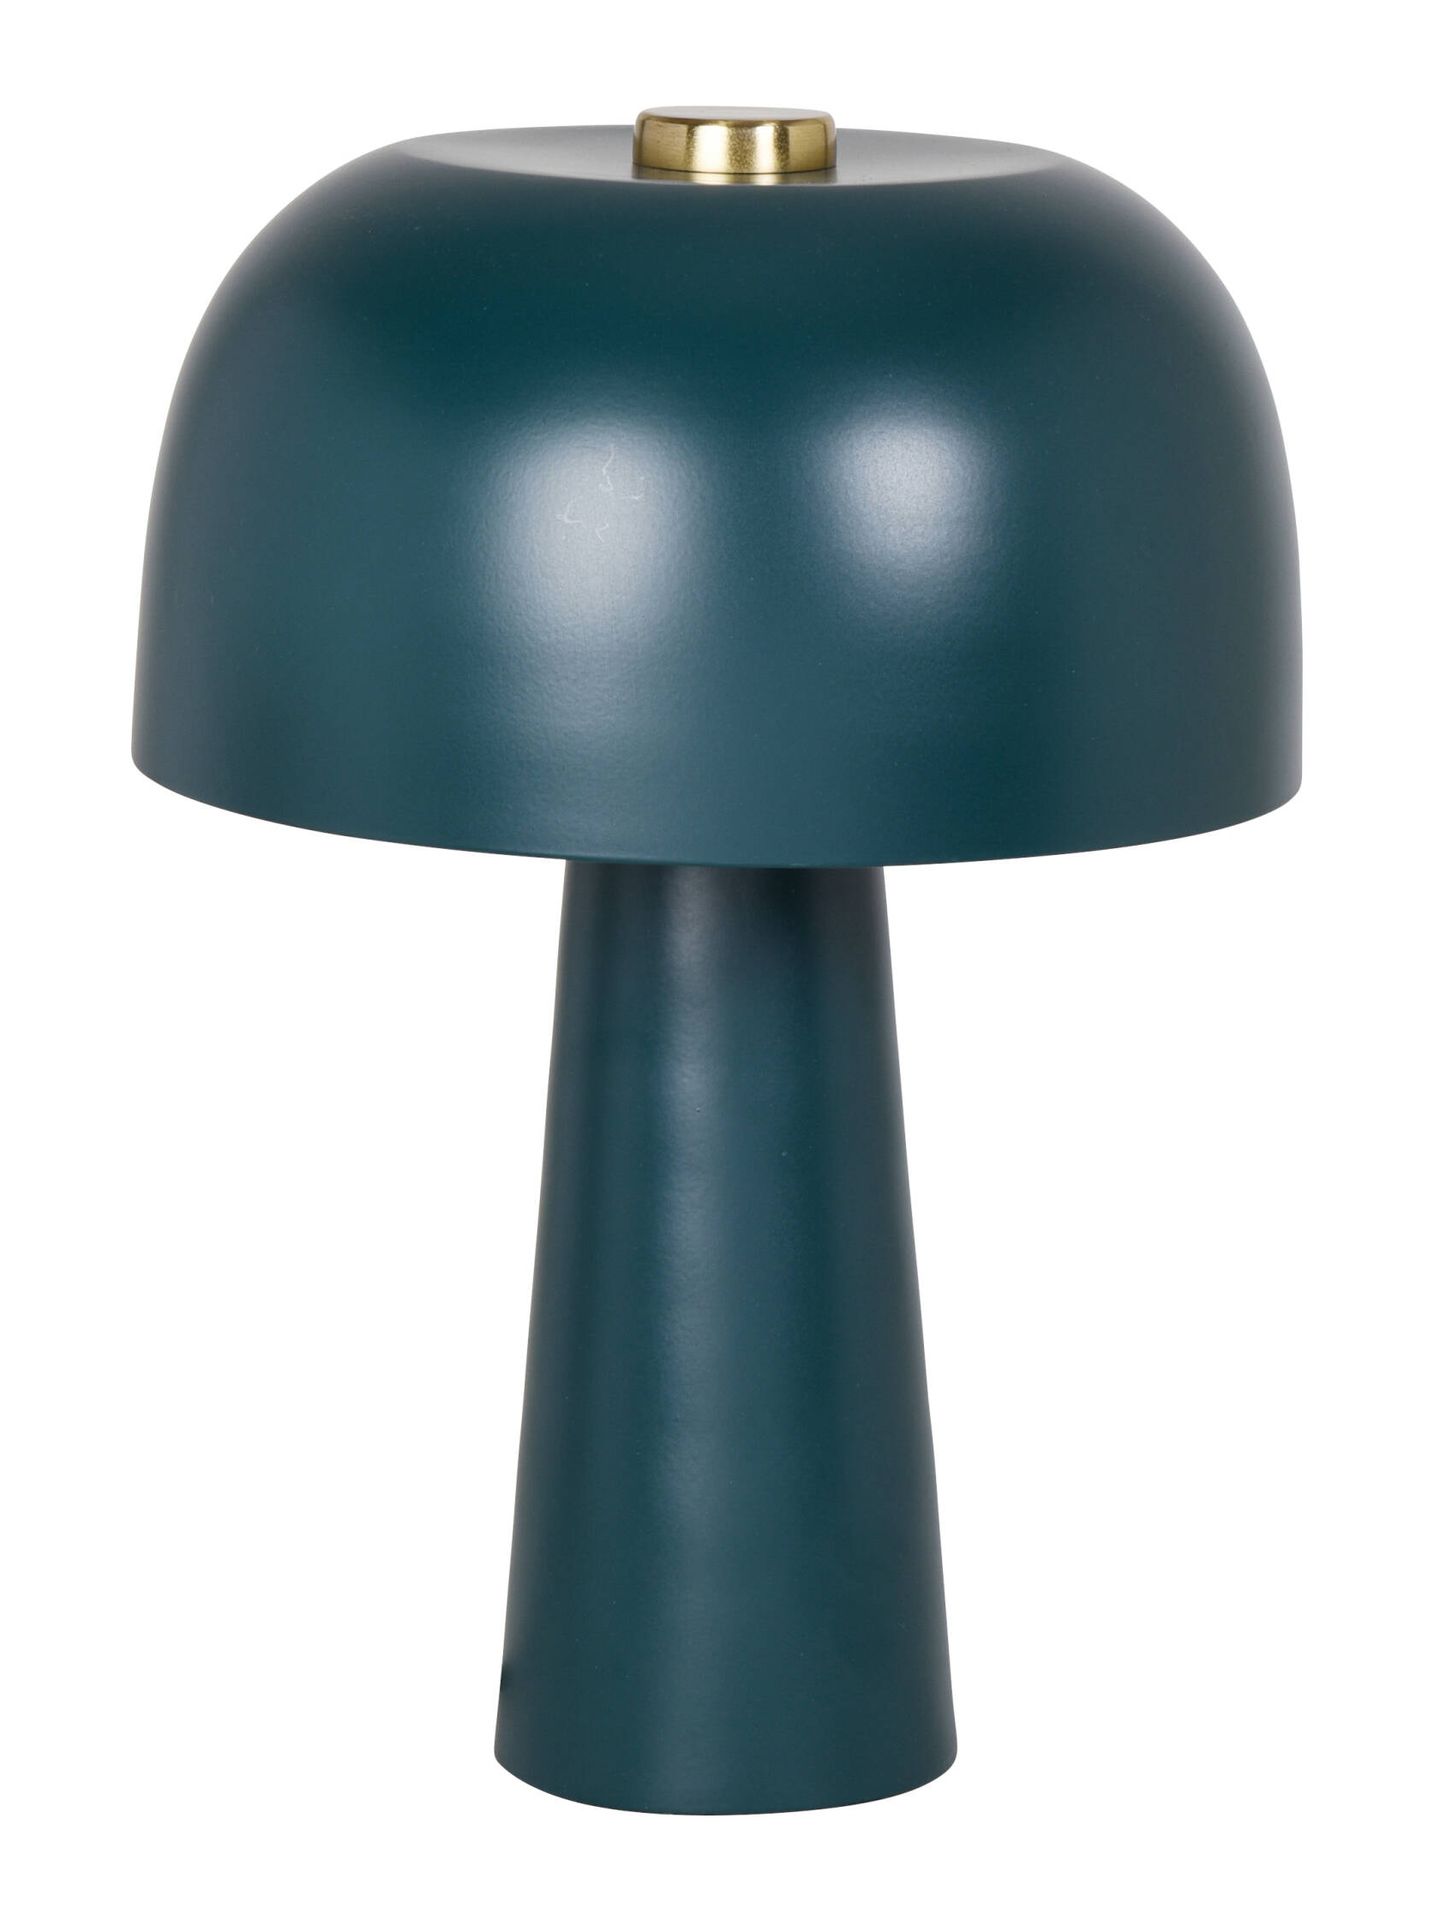 Lámpara Zisa, una pequeña seta verde para casa. (Cortesía)